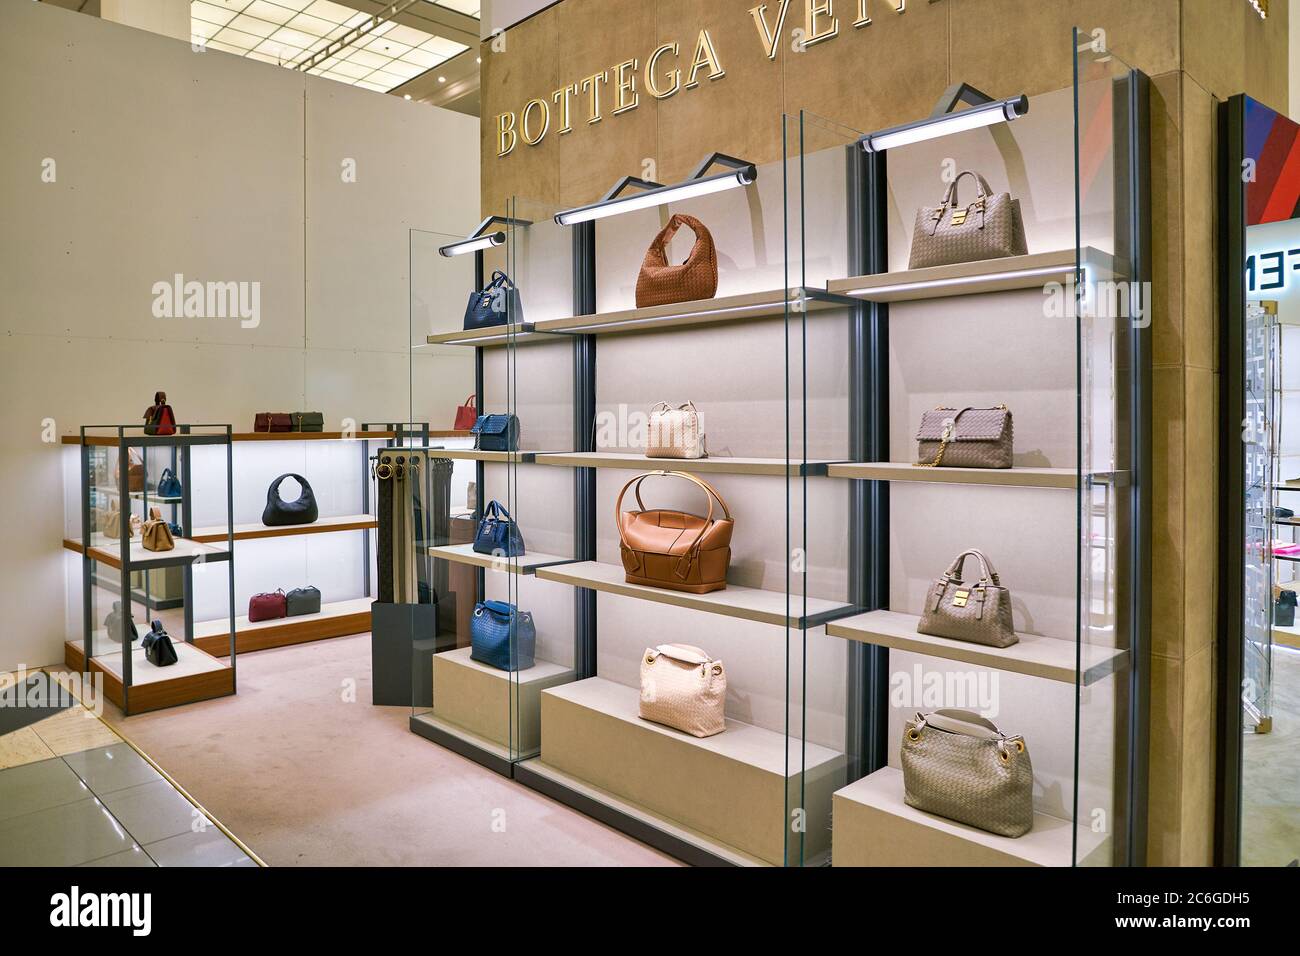 Germany, Berlin. Handbags by Louis Vuitton at KaDeWe department